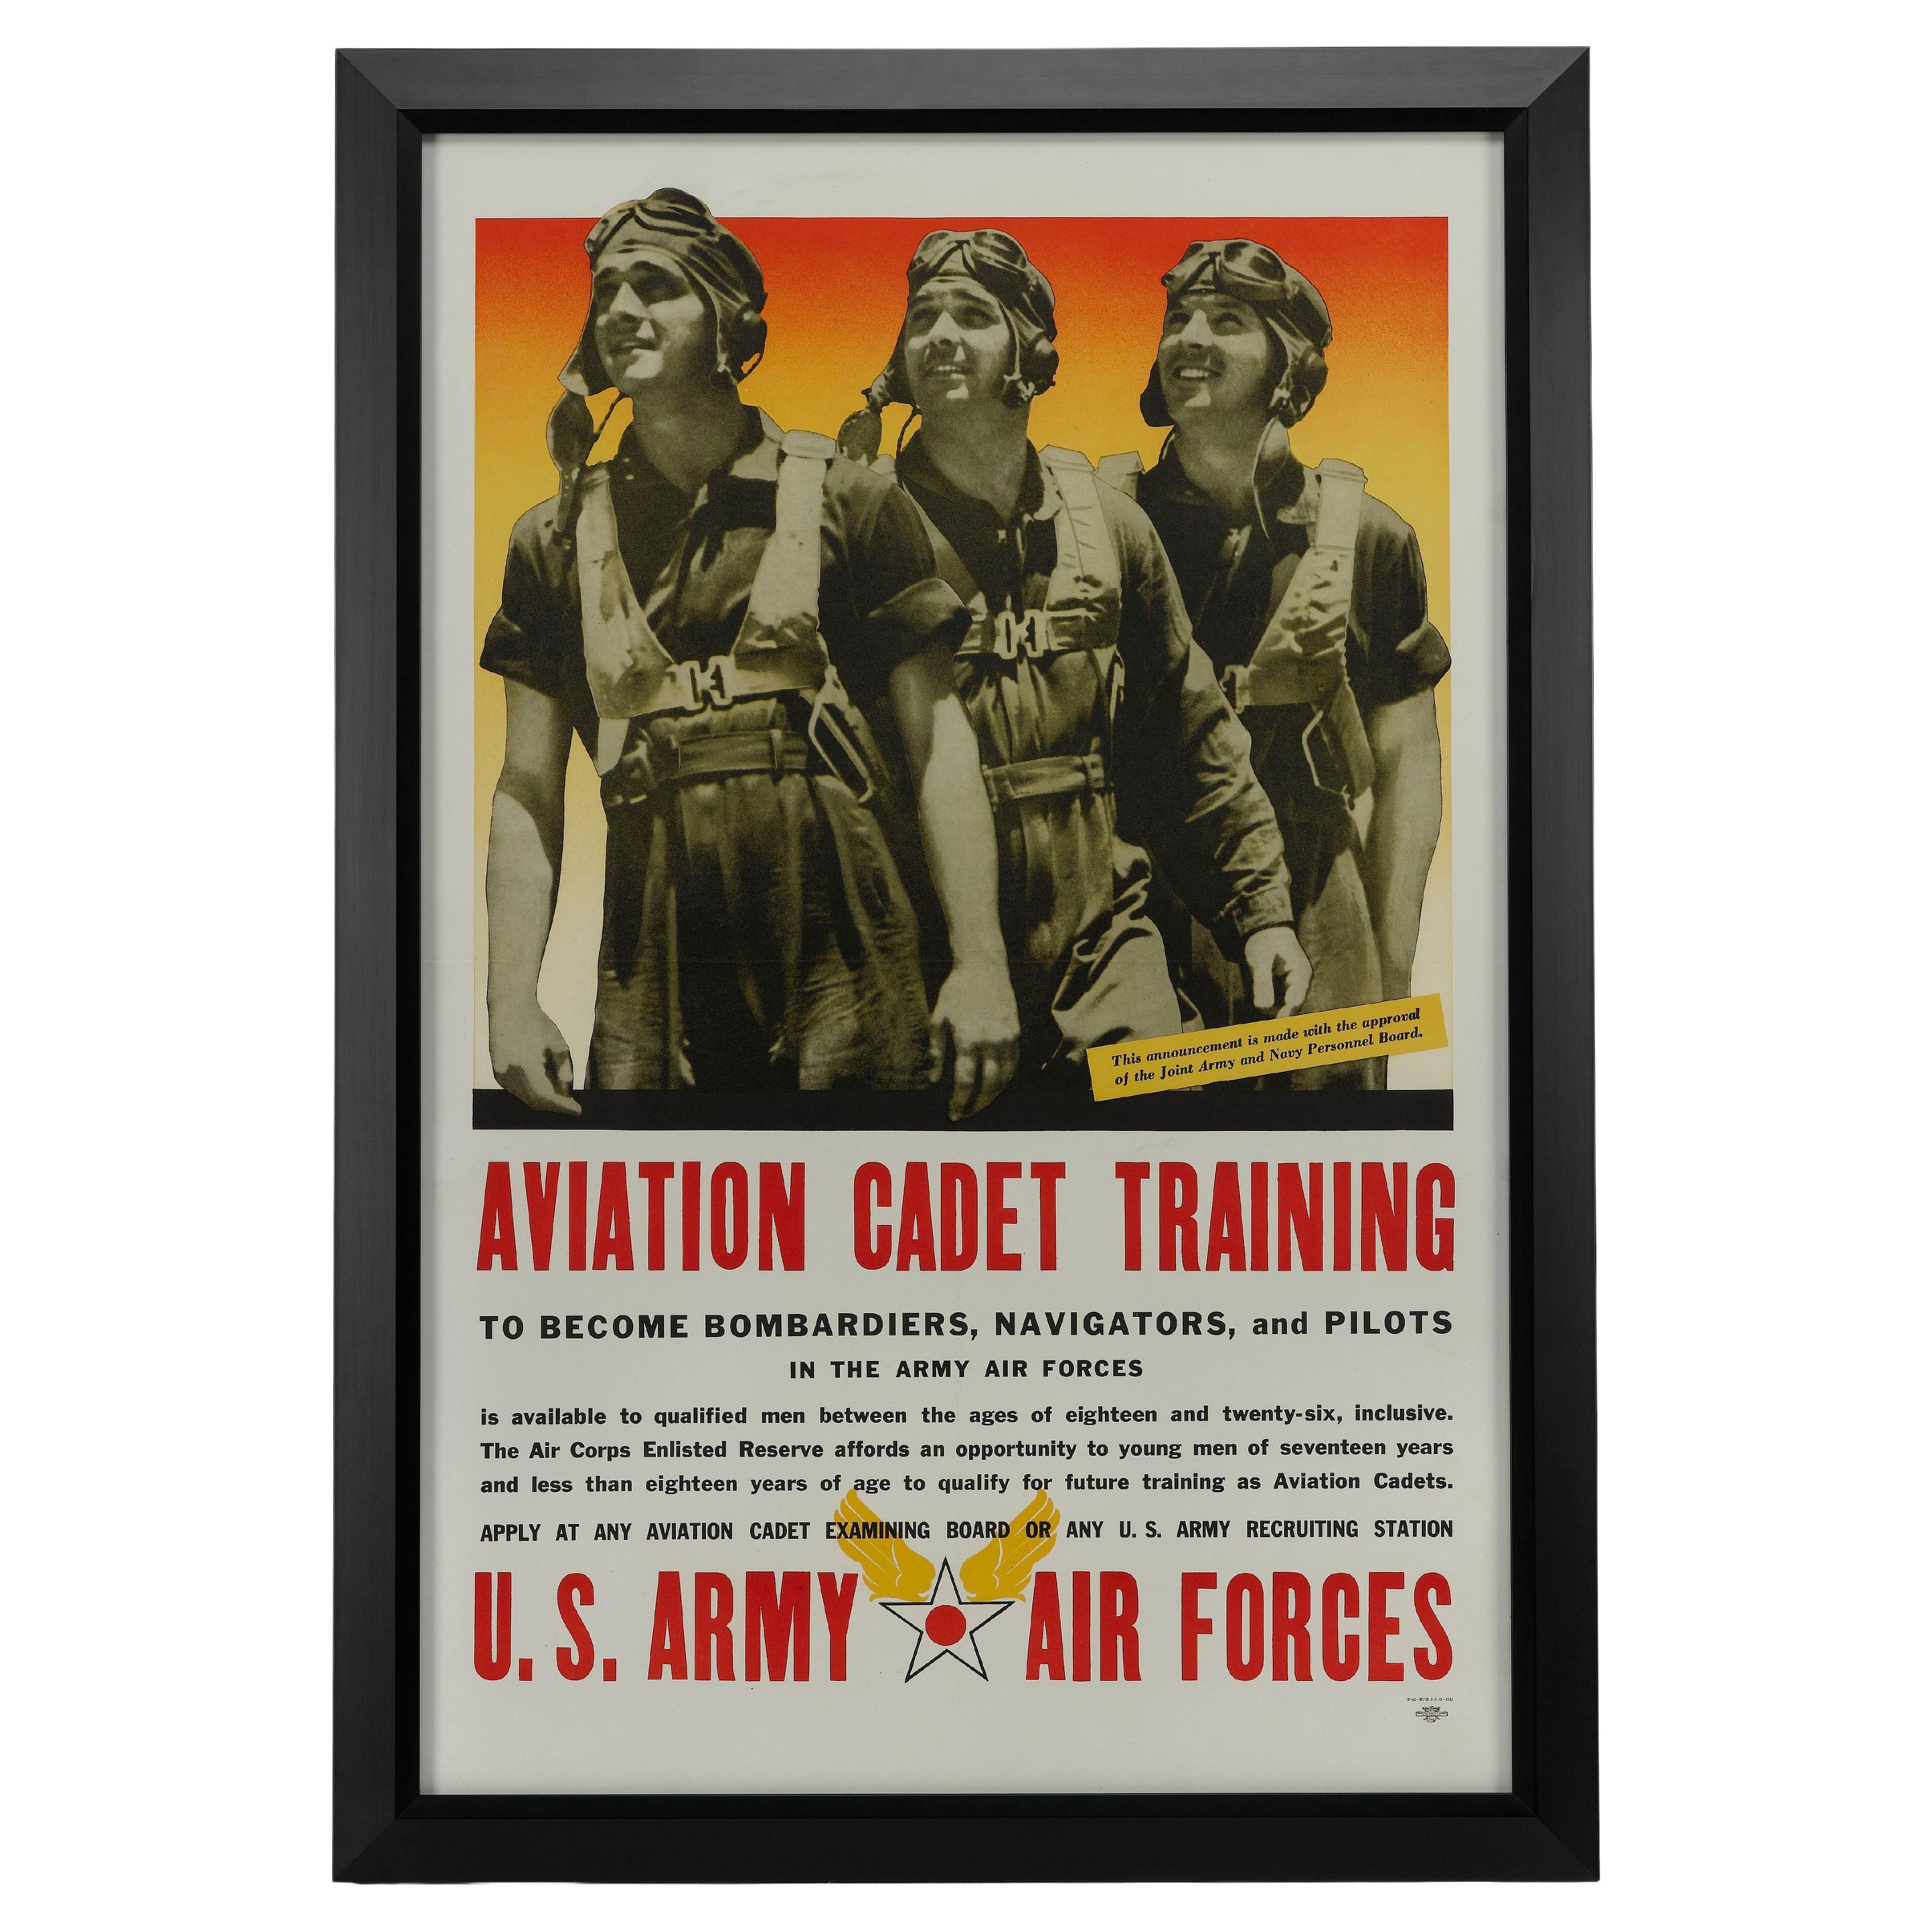 "Formation des cadets de l'aviation, armée de l'air américaine" Affiche de recrutement d'époque de la Seconde Guerre mondiale